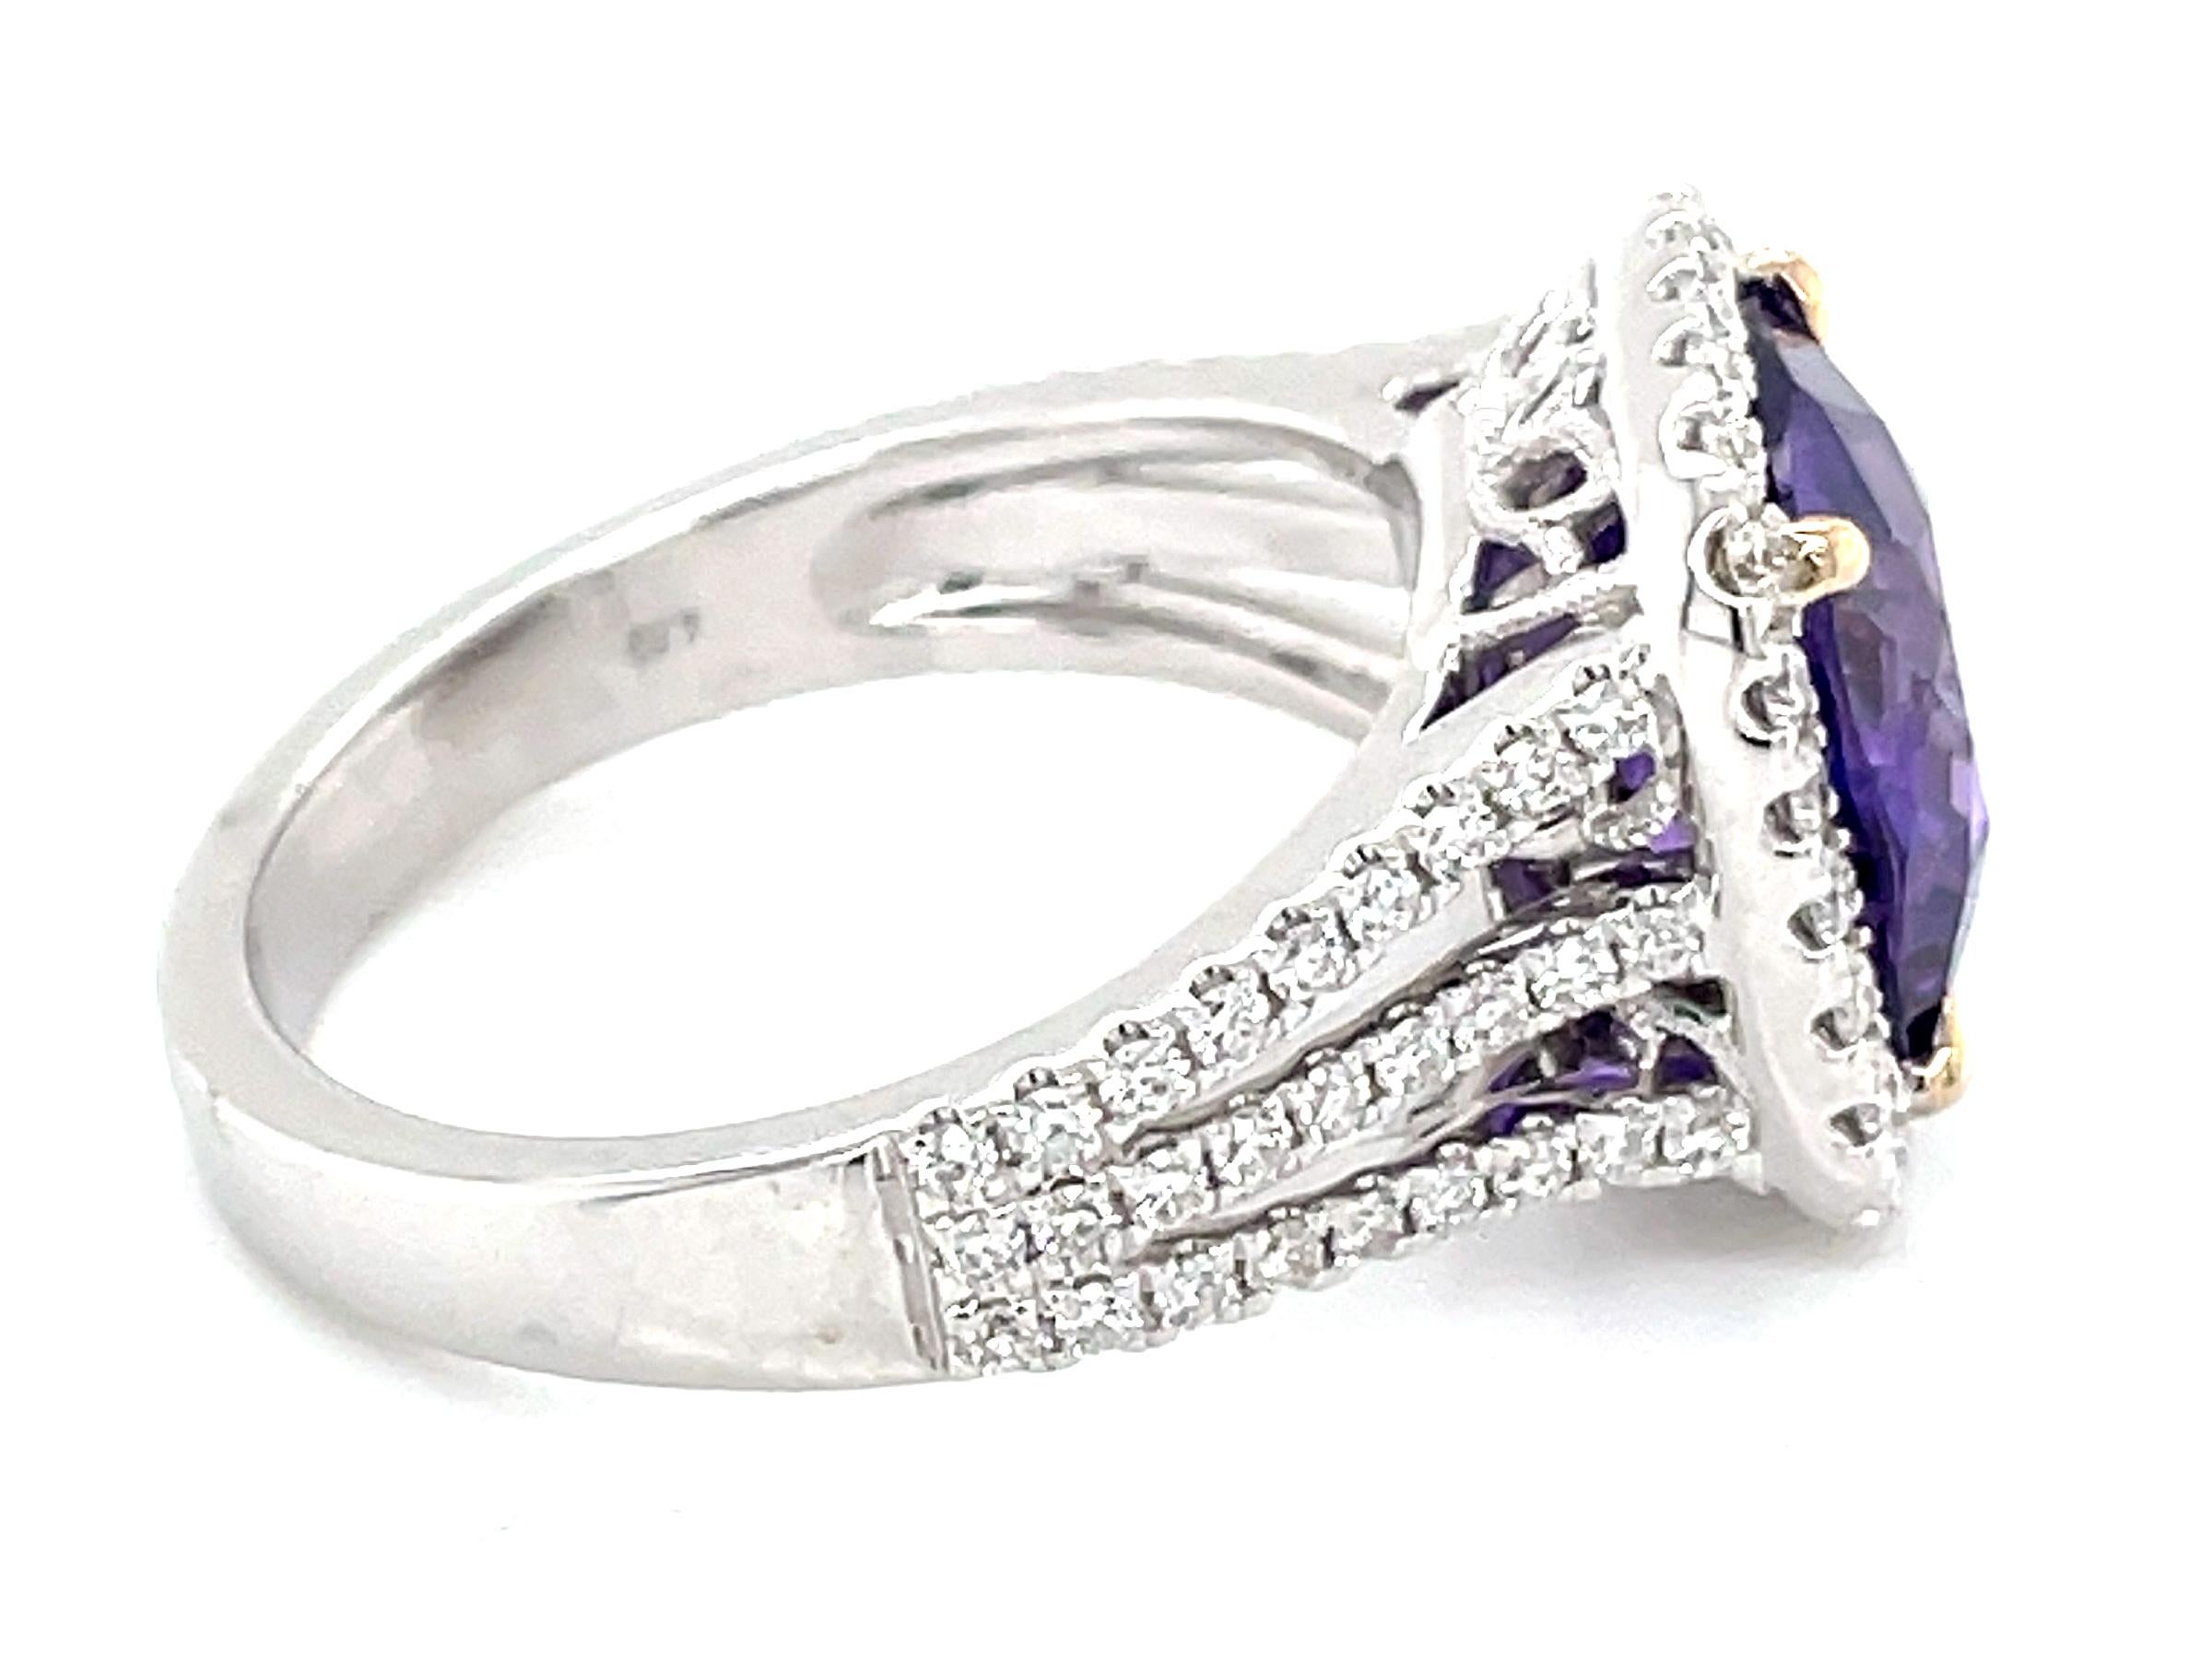 Dieser atemberaubende Cocktailring präsentiert einen wunderschönen GAL Certified Natural No Heat 4,59 Carat Cushion Purple Sapphire mit einem Diamond Halo. Dieser atemberaubende Saphir sitzt auf einem dreifachen Diamantschaft und der Ring ist in 18